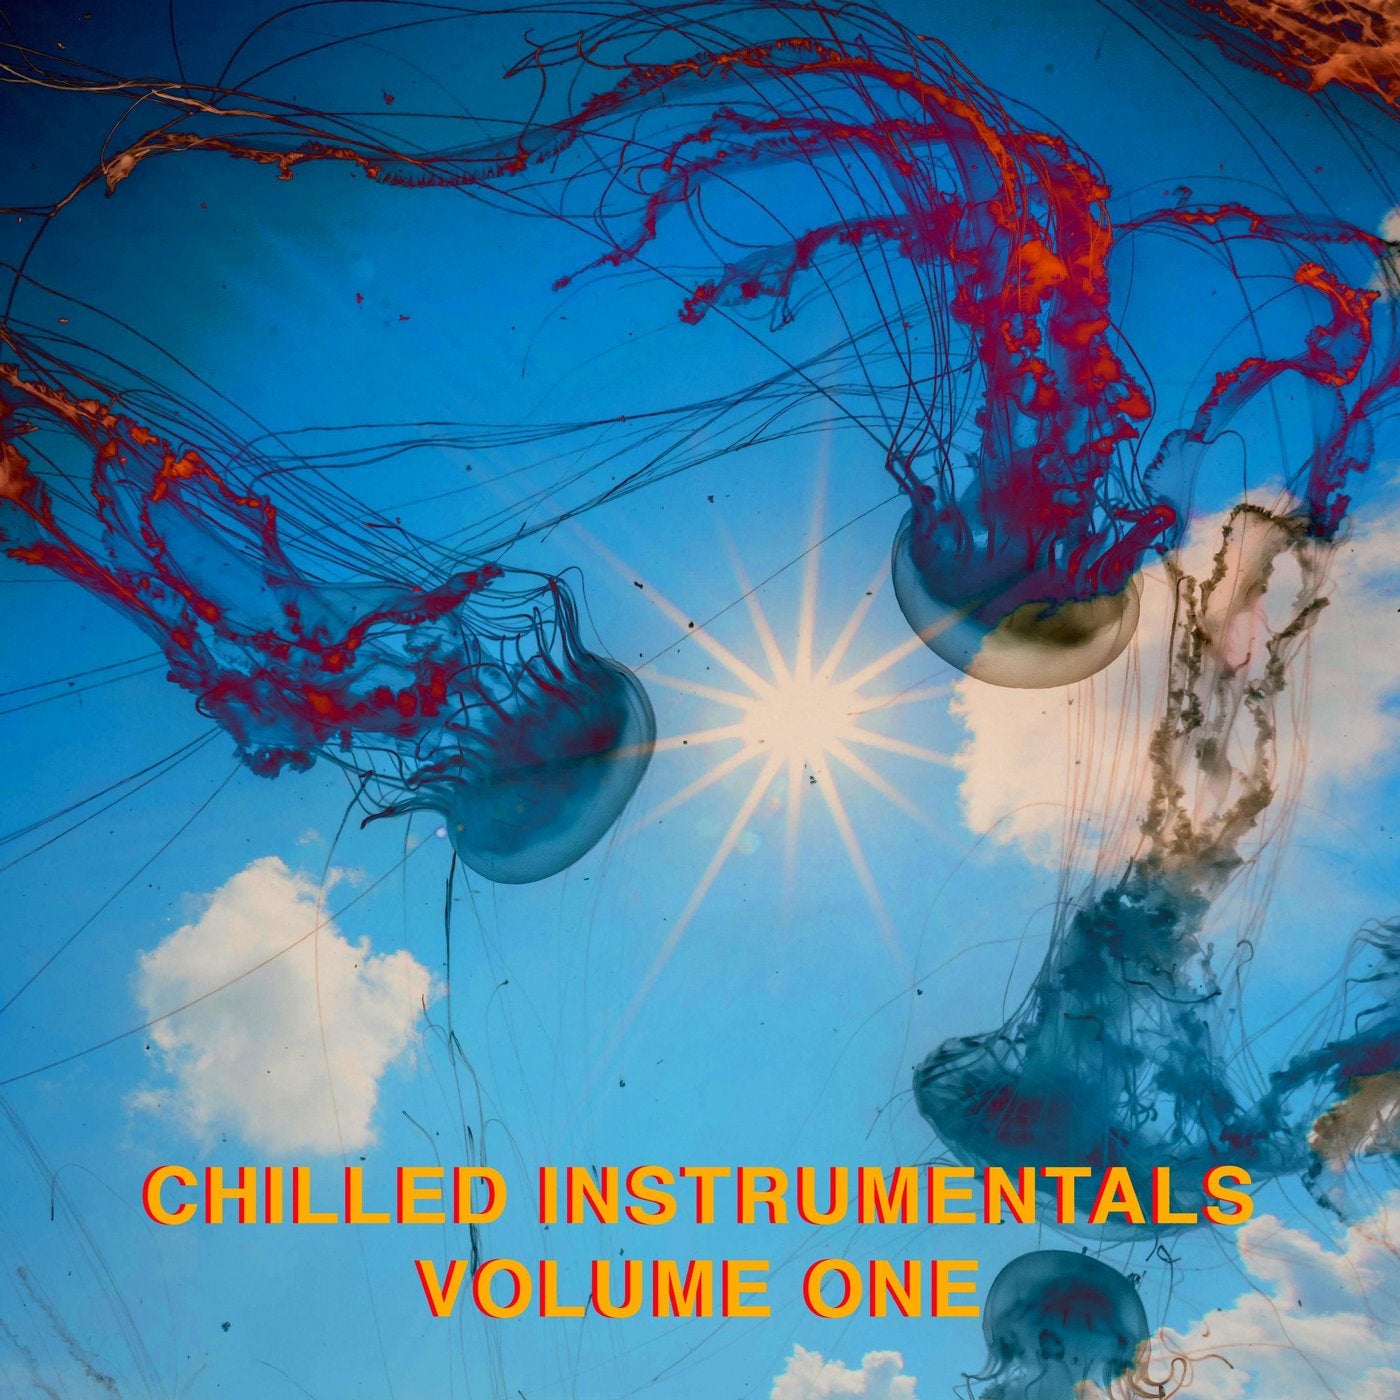 Chilled Instrumentals Vol. 1